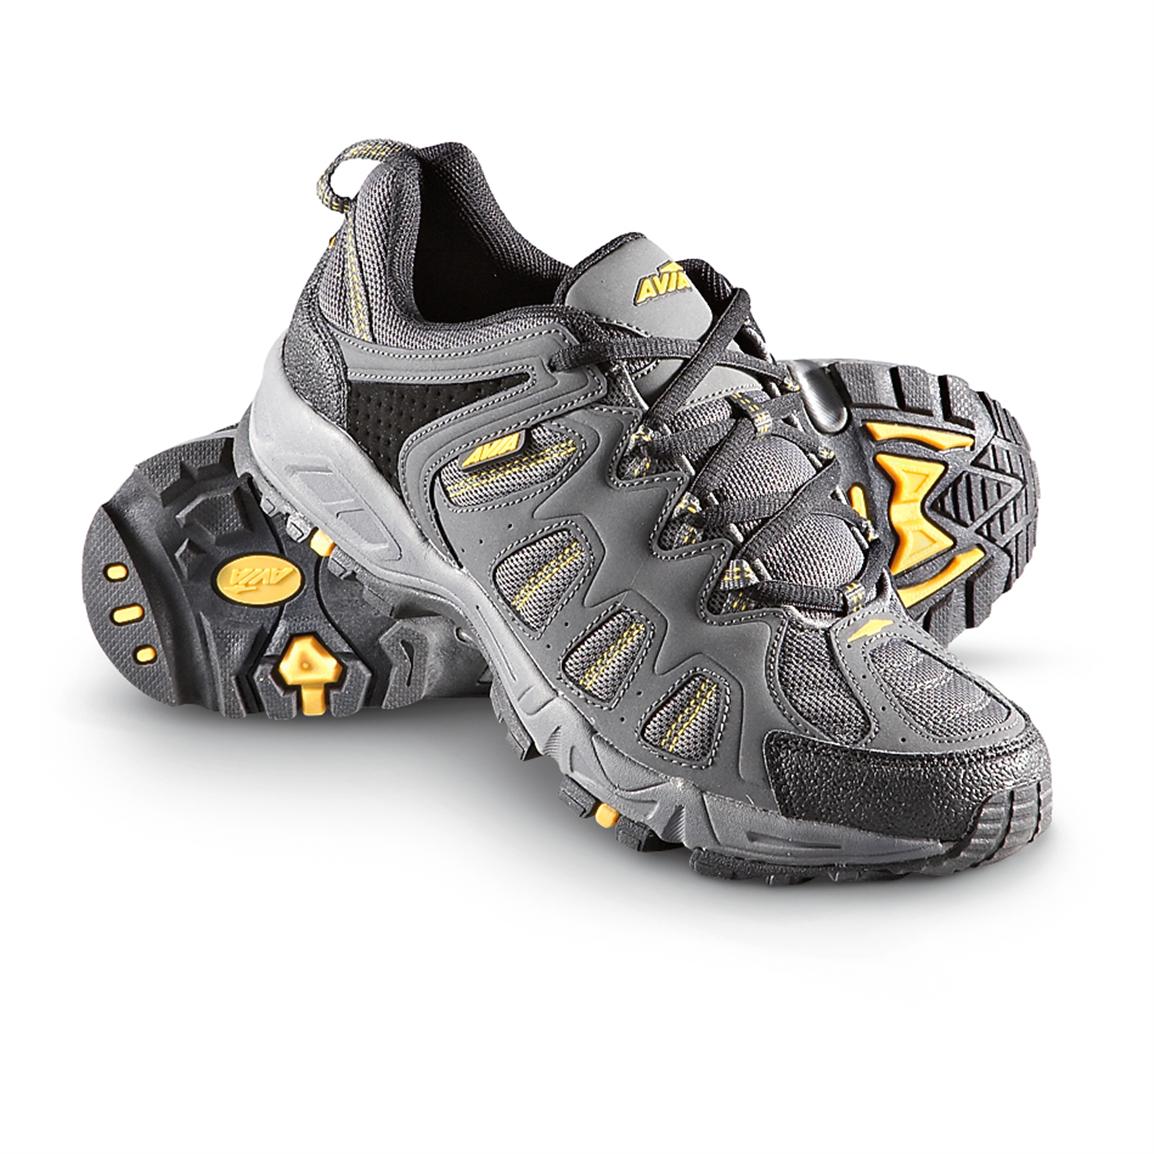 Men's Avia® Trail Runners, Gray / Yellow - 181551, Running Shoes ...